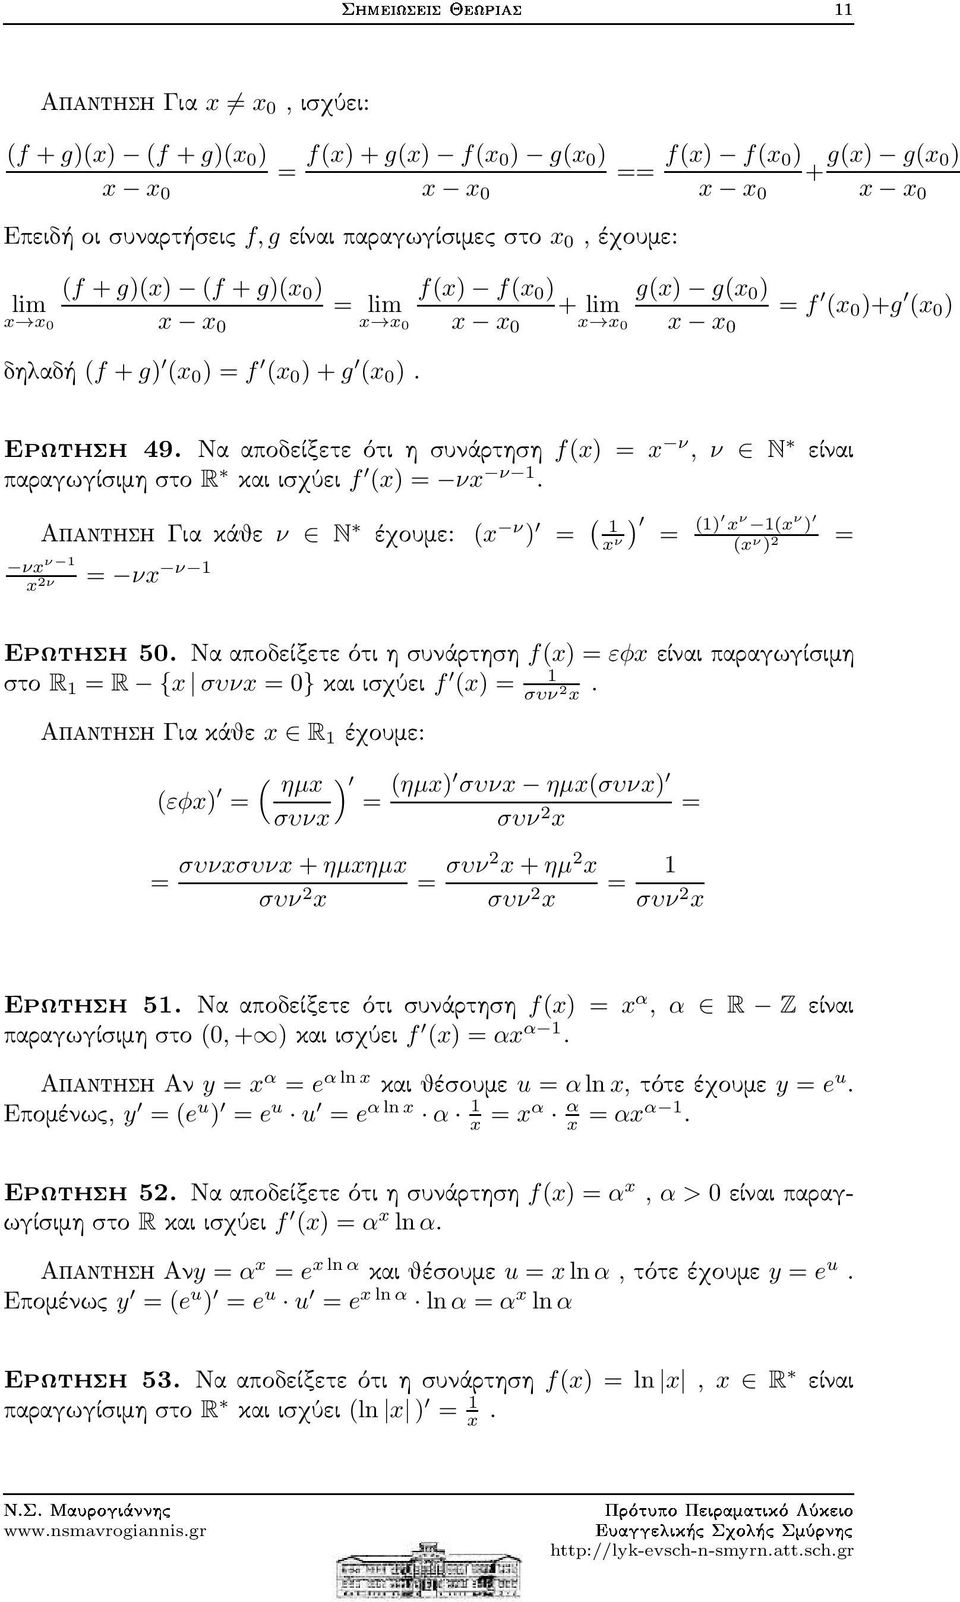 ΑπαντησηΓιακάθε ν N έχουμε: (x ν ) = ( ) 1 x = (1) x ν 1(x ν ) ν = νx ν 1 νx ν 1 x 2ν (x ν ) 2 = Ερωτηση50.